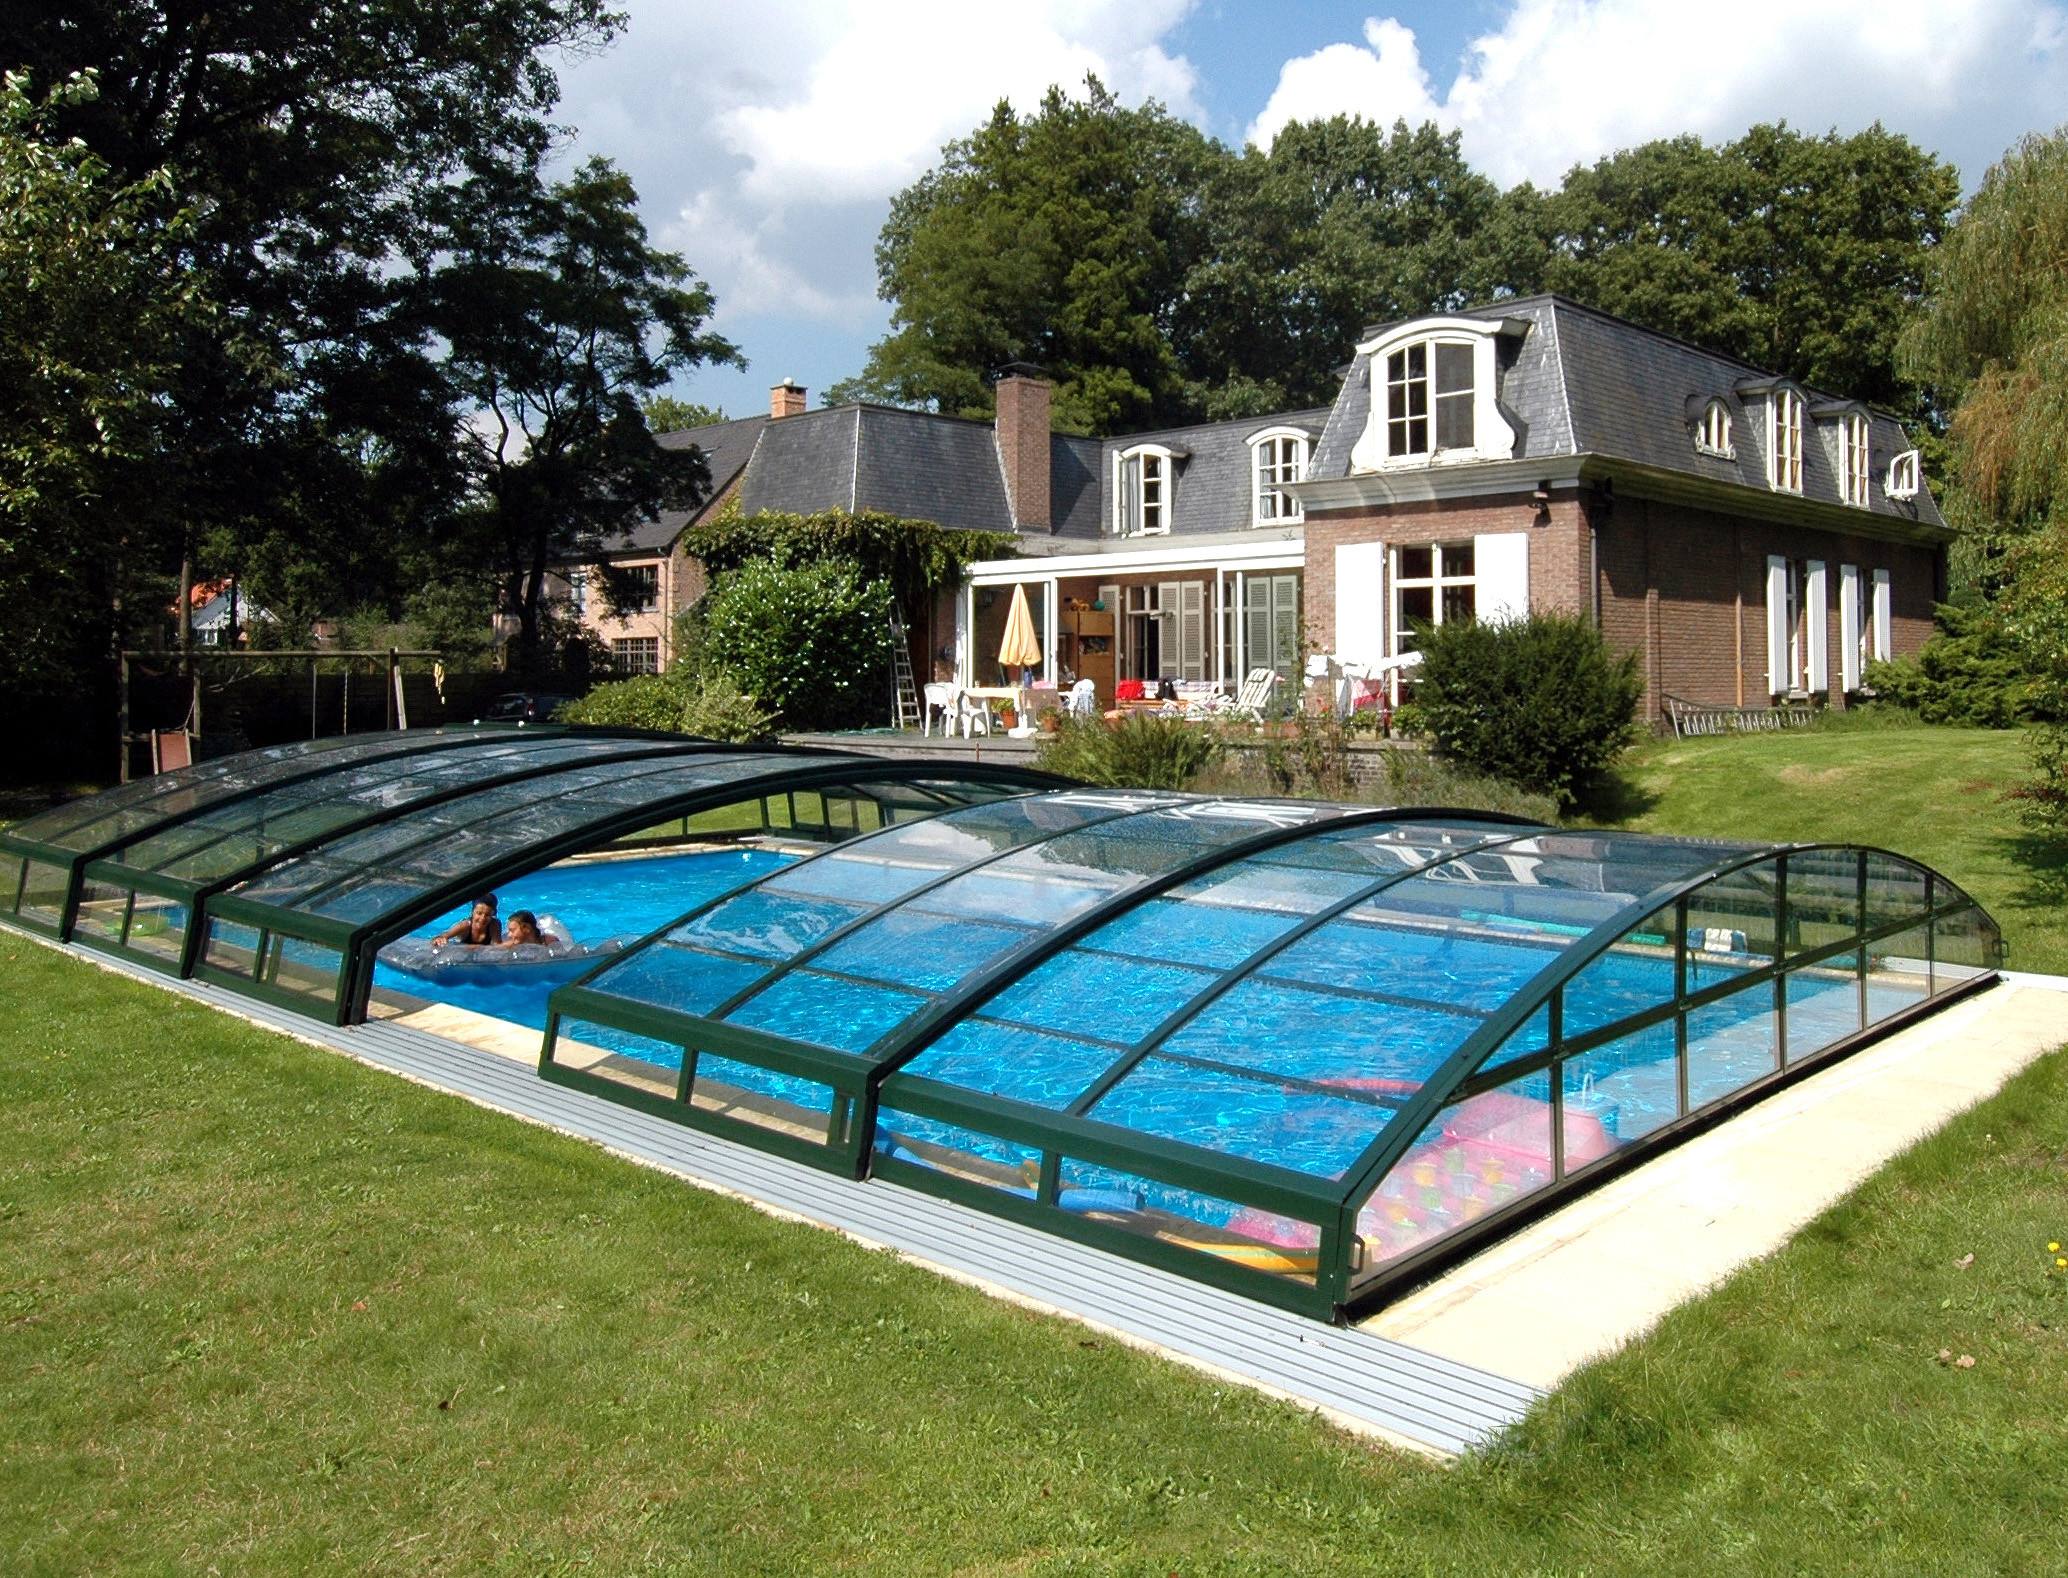 Maison avec piscine couverte et jardin verdoyant.